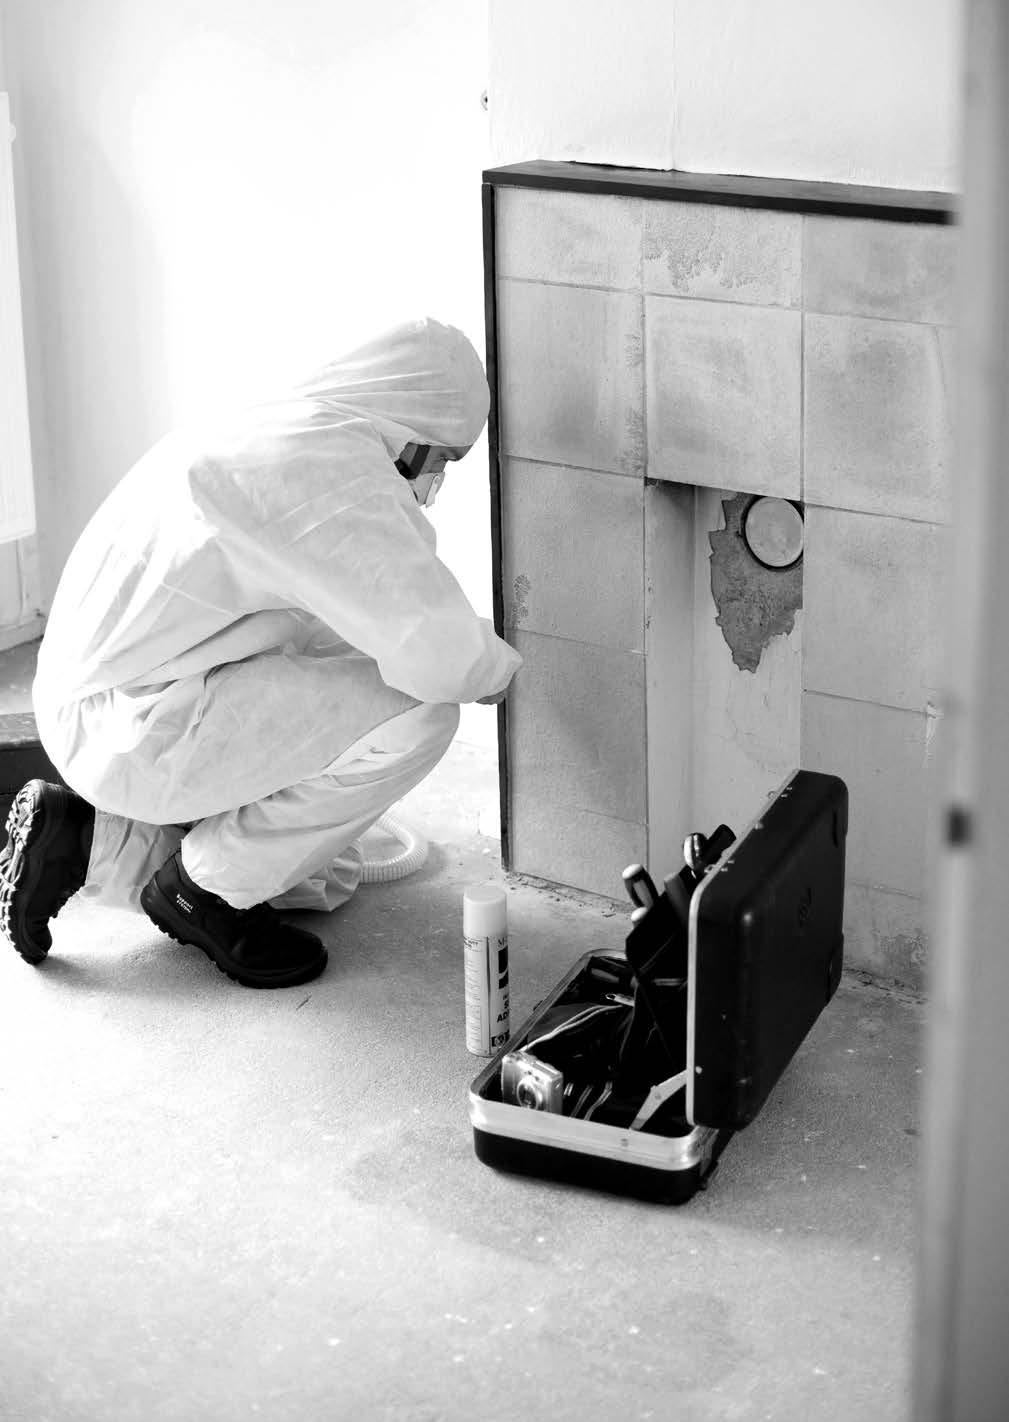 HOOFDSTUK 2 DE VERLANGDE ZEKERHEID Asbestinventarisatie Asbestinventarisaties zijn verpicht bij de renovatie of soop van gebouwen en objecten van vóór 1994.